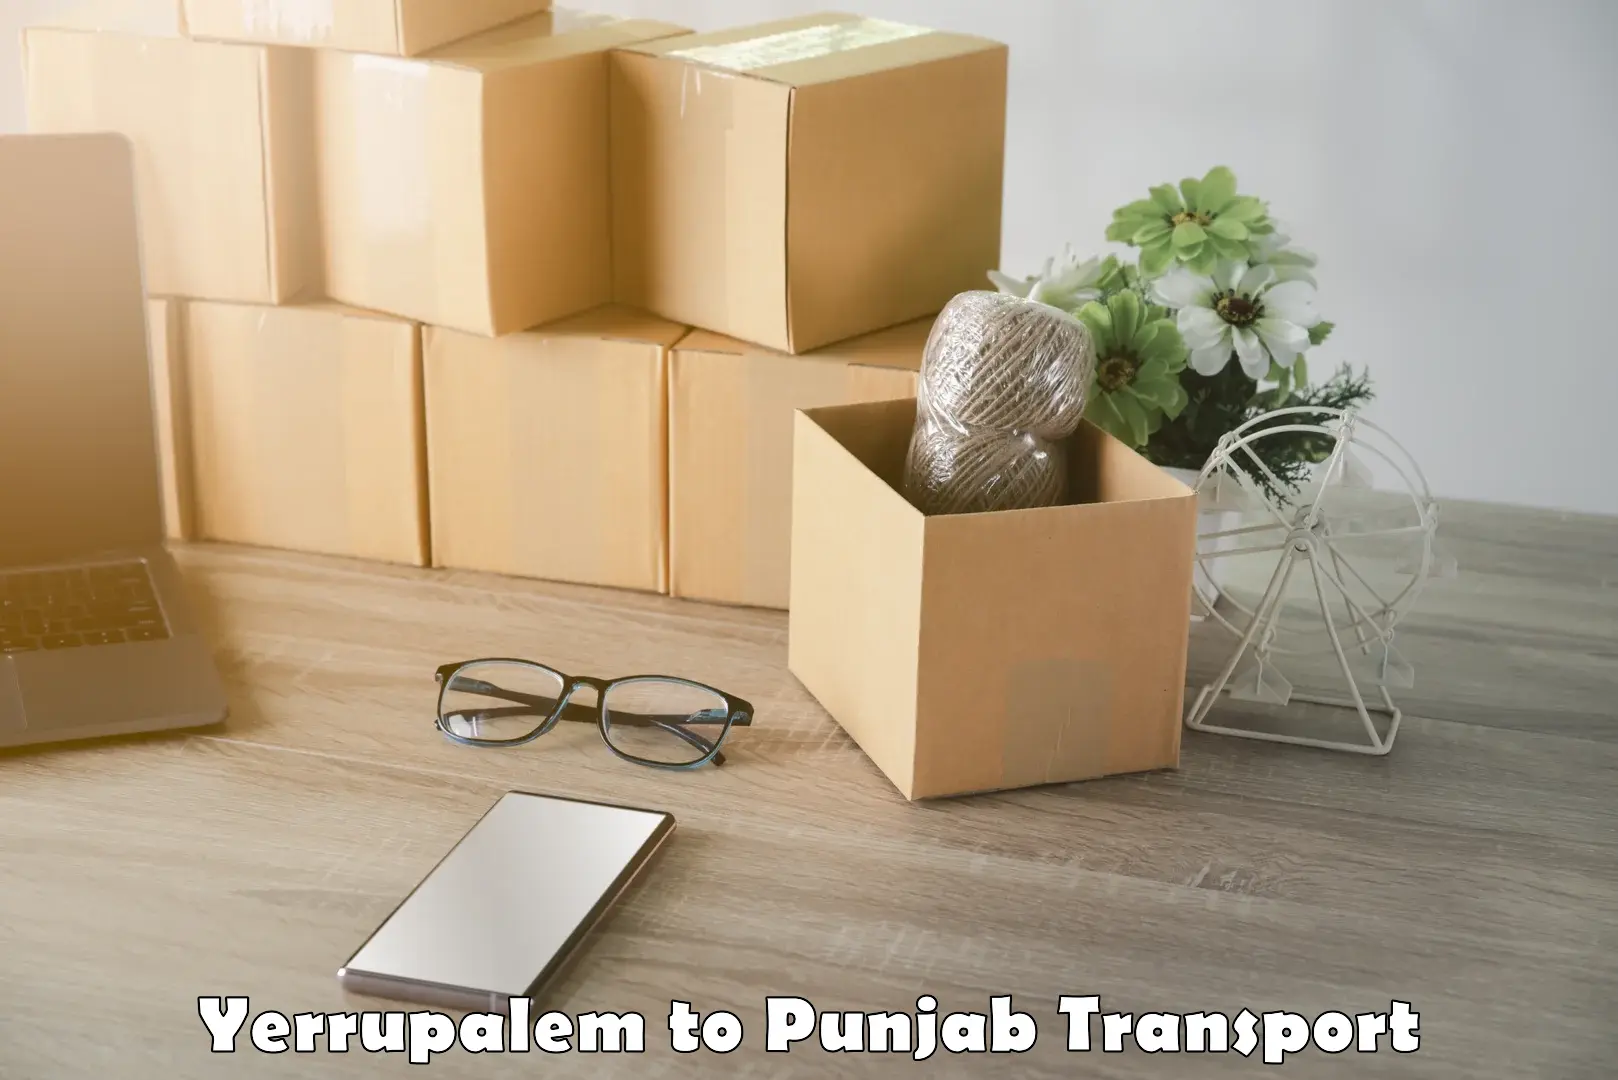 Nearest transport service Yerrupalem to Punjab